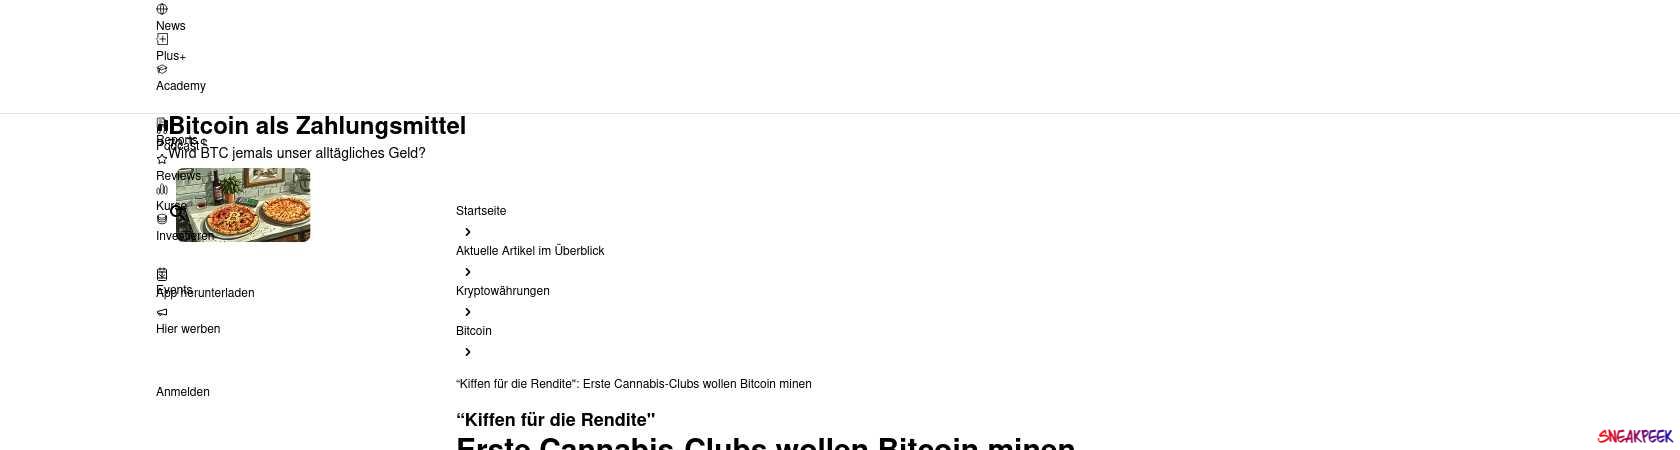 Read the full Article:  ⭲ “Kiffen für die Rendite": Erste Cannabis-Clubs wollen Bitcoin minen